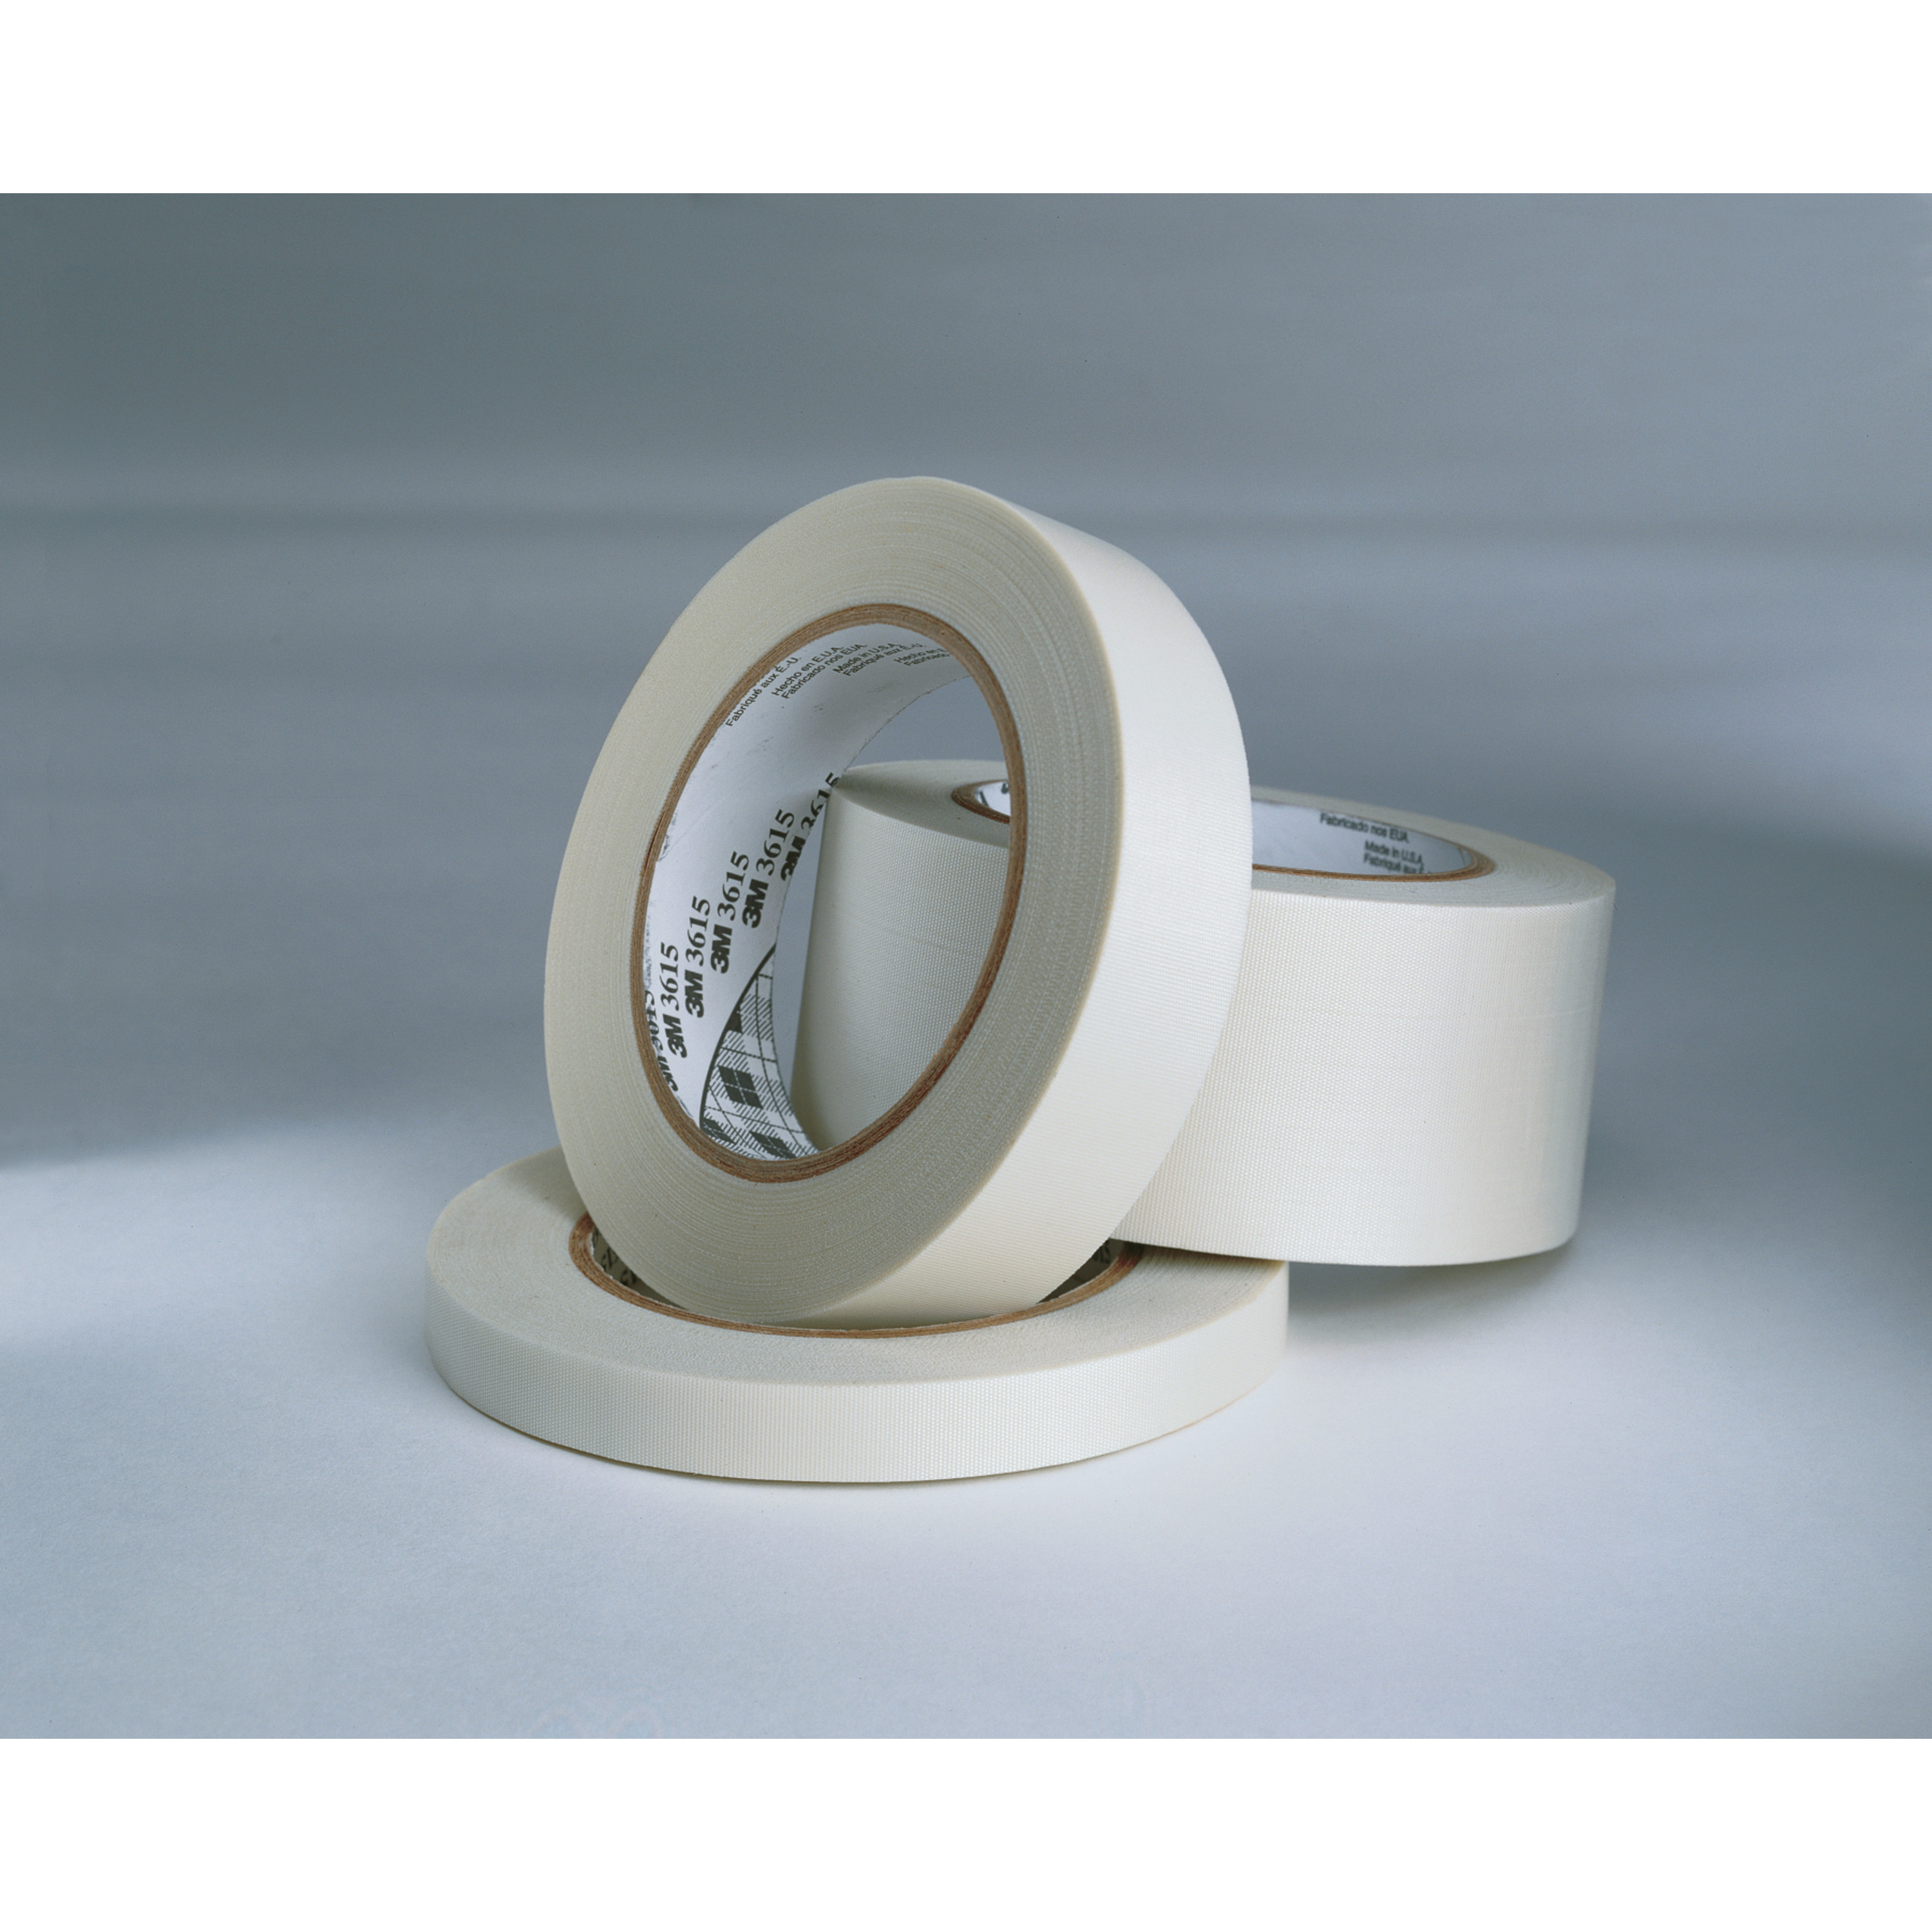 3M™ Glass Cloth Tape 3615, White, 1 1/2 in x 36 yd, 7 mil, 24 rolls per
case